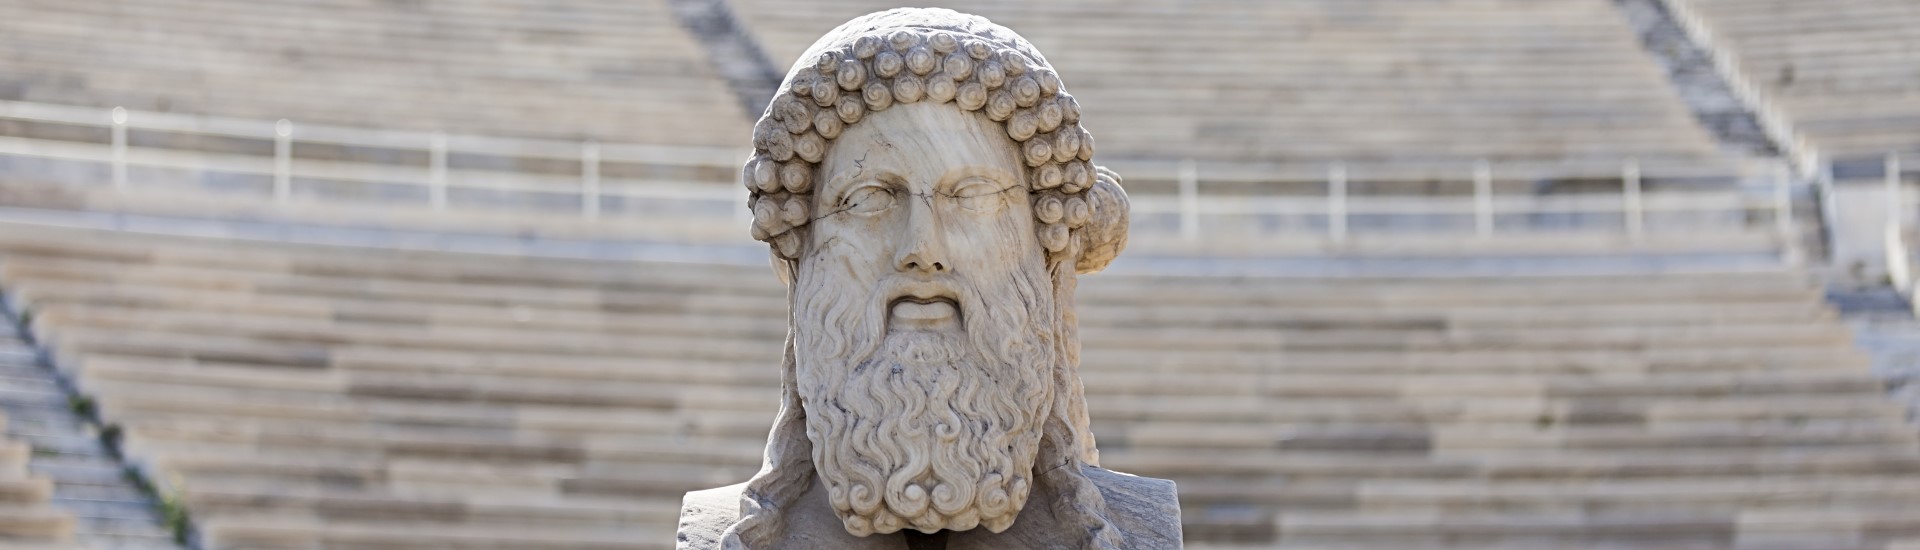 Herm sculpture at panathenaic stadium in Athens, Greece